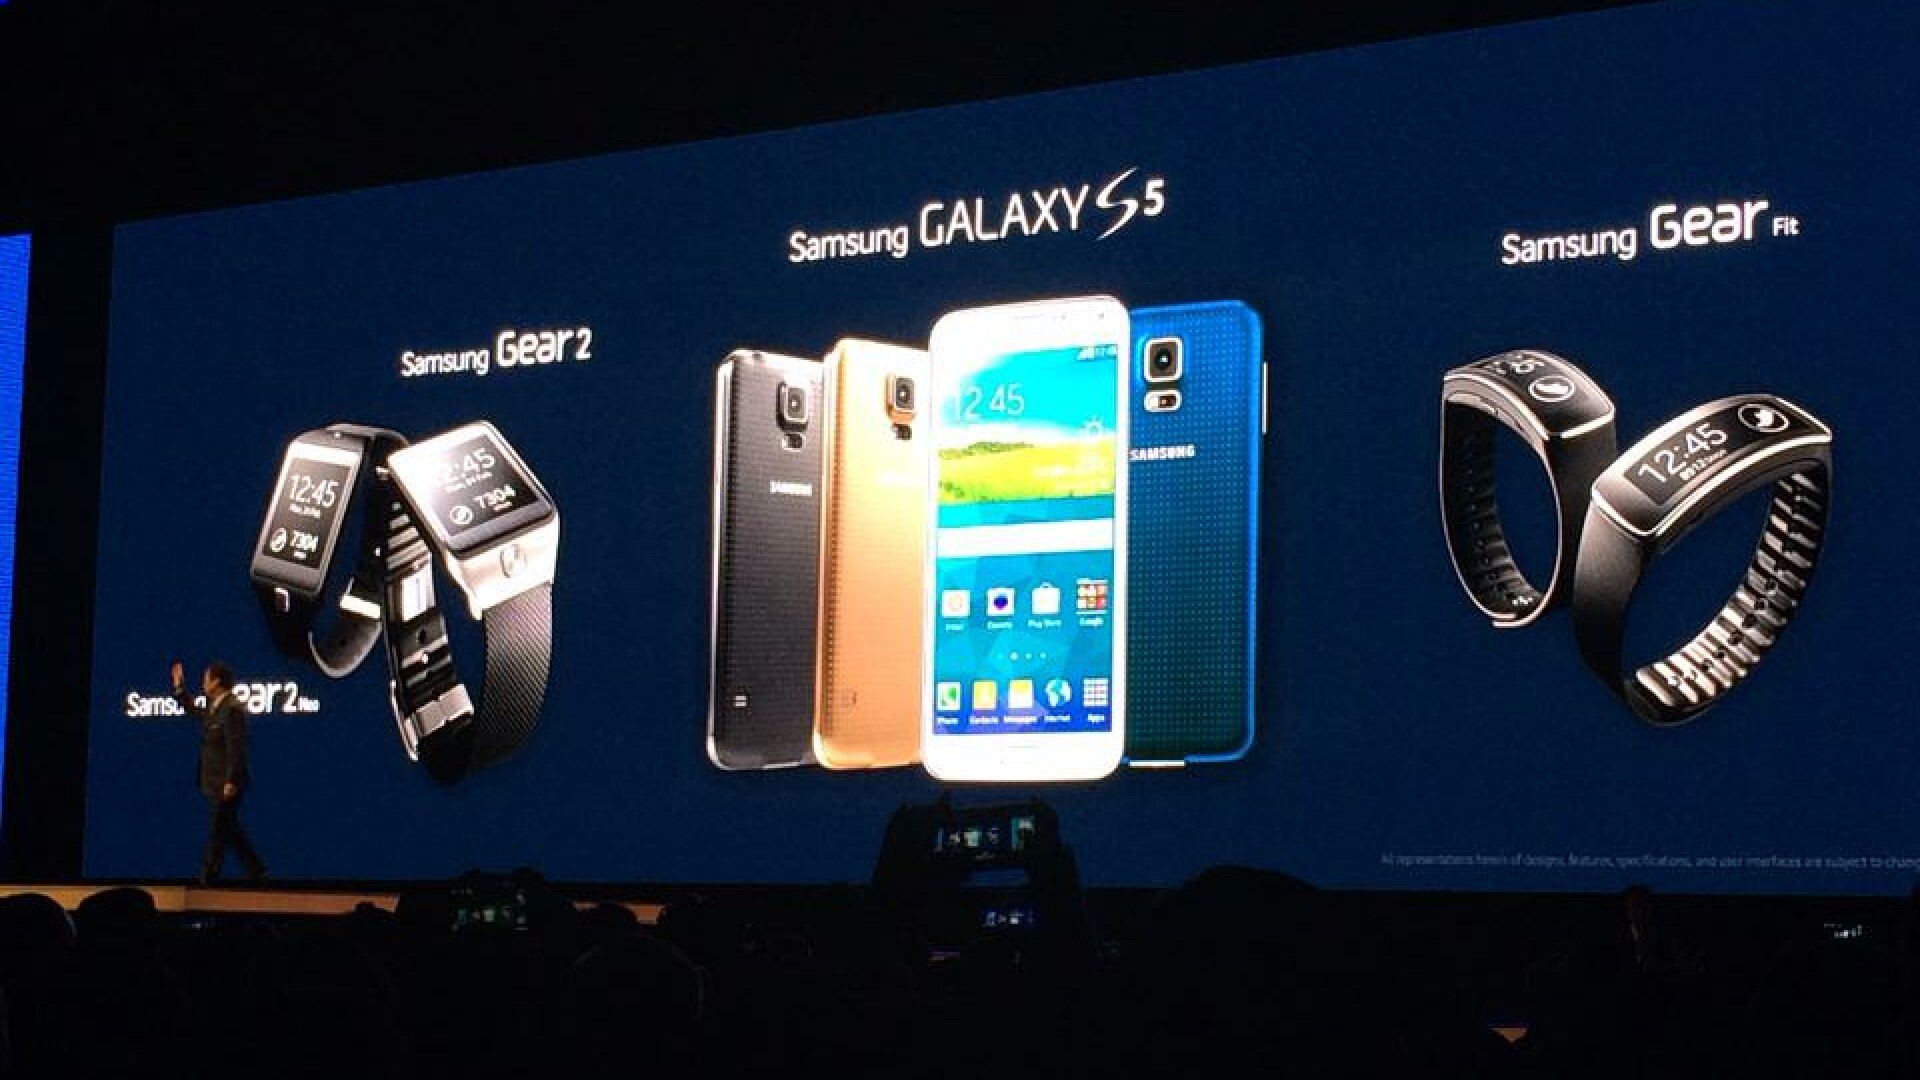 Noul Galaxy S5, alaturi de bratara Gear Fit si ceasul Galaxy Gear